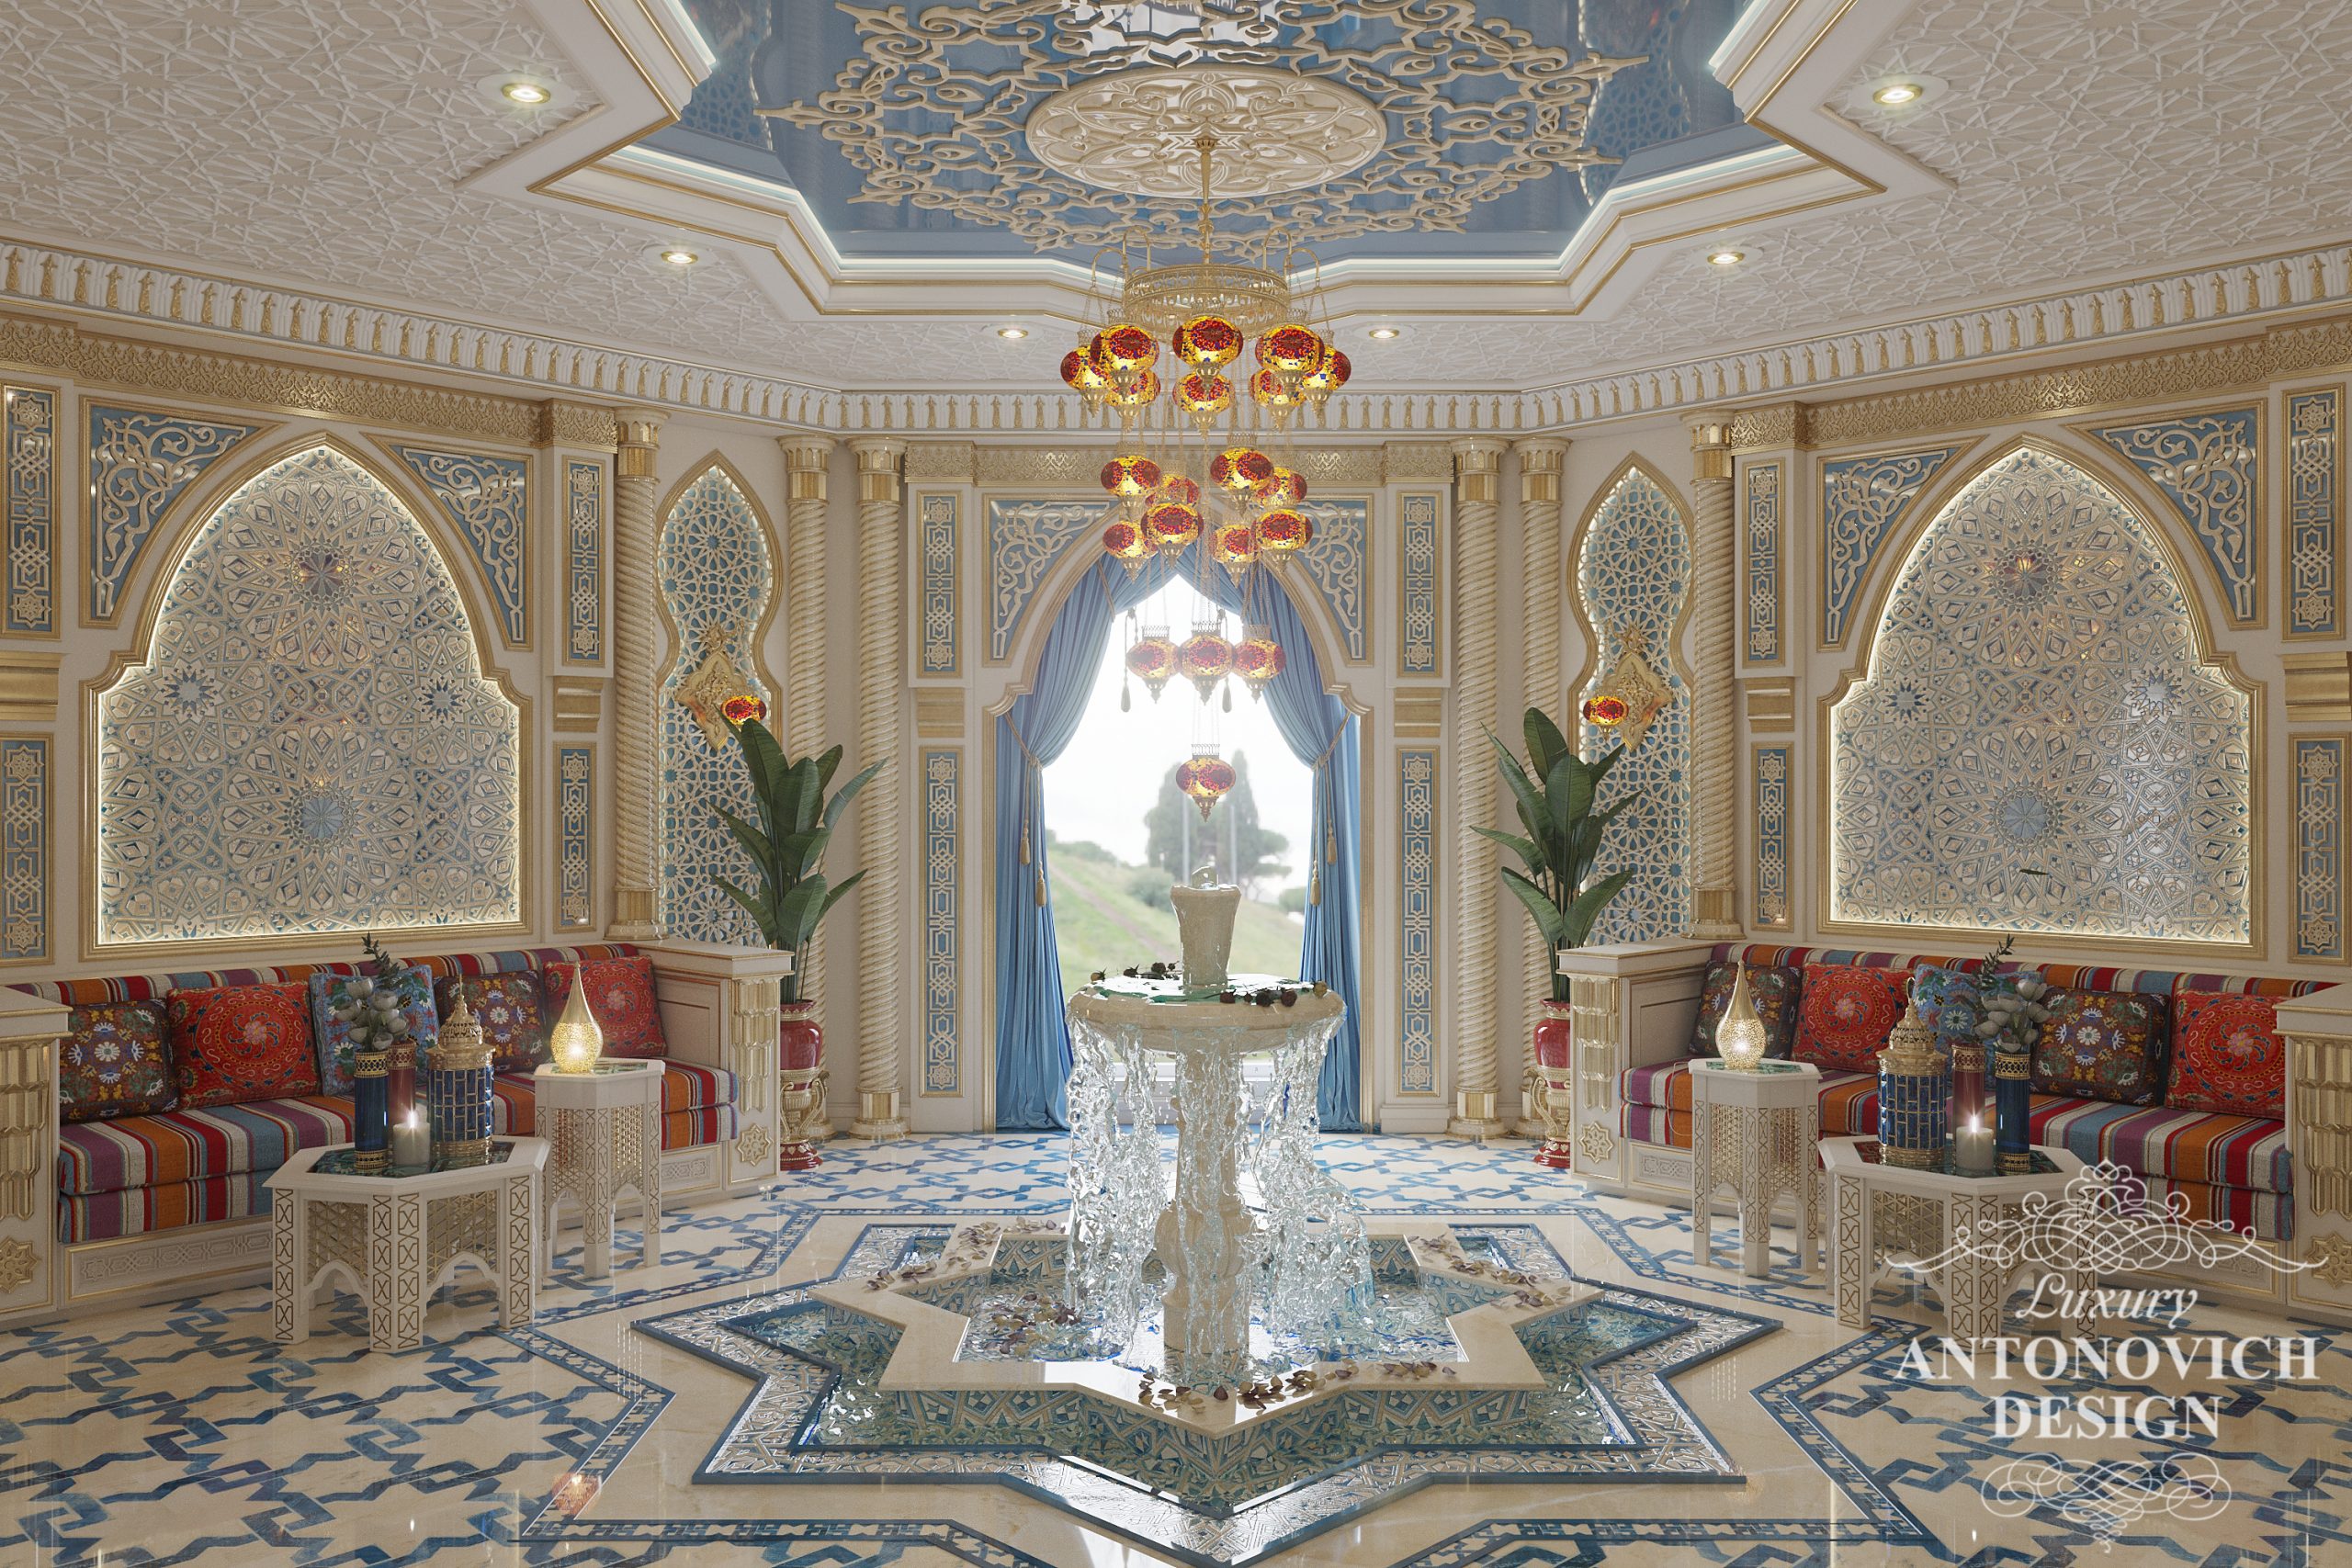 Комната отдыха в роскошном арабском стиле с орнаментальным резным декором